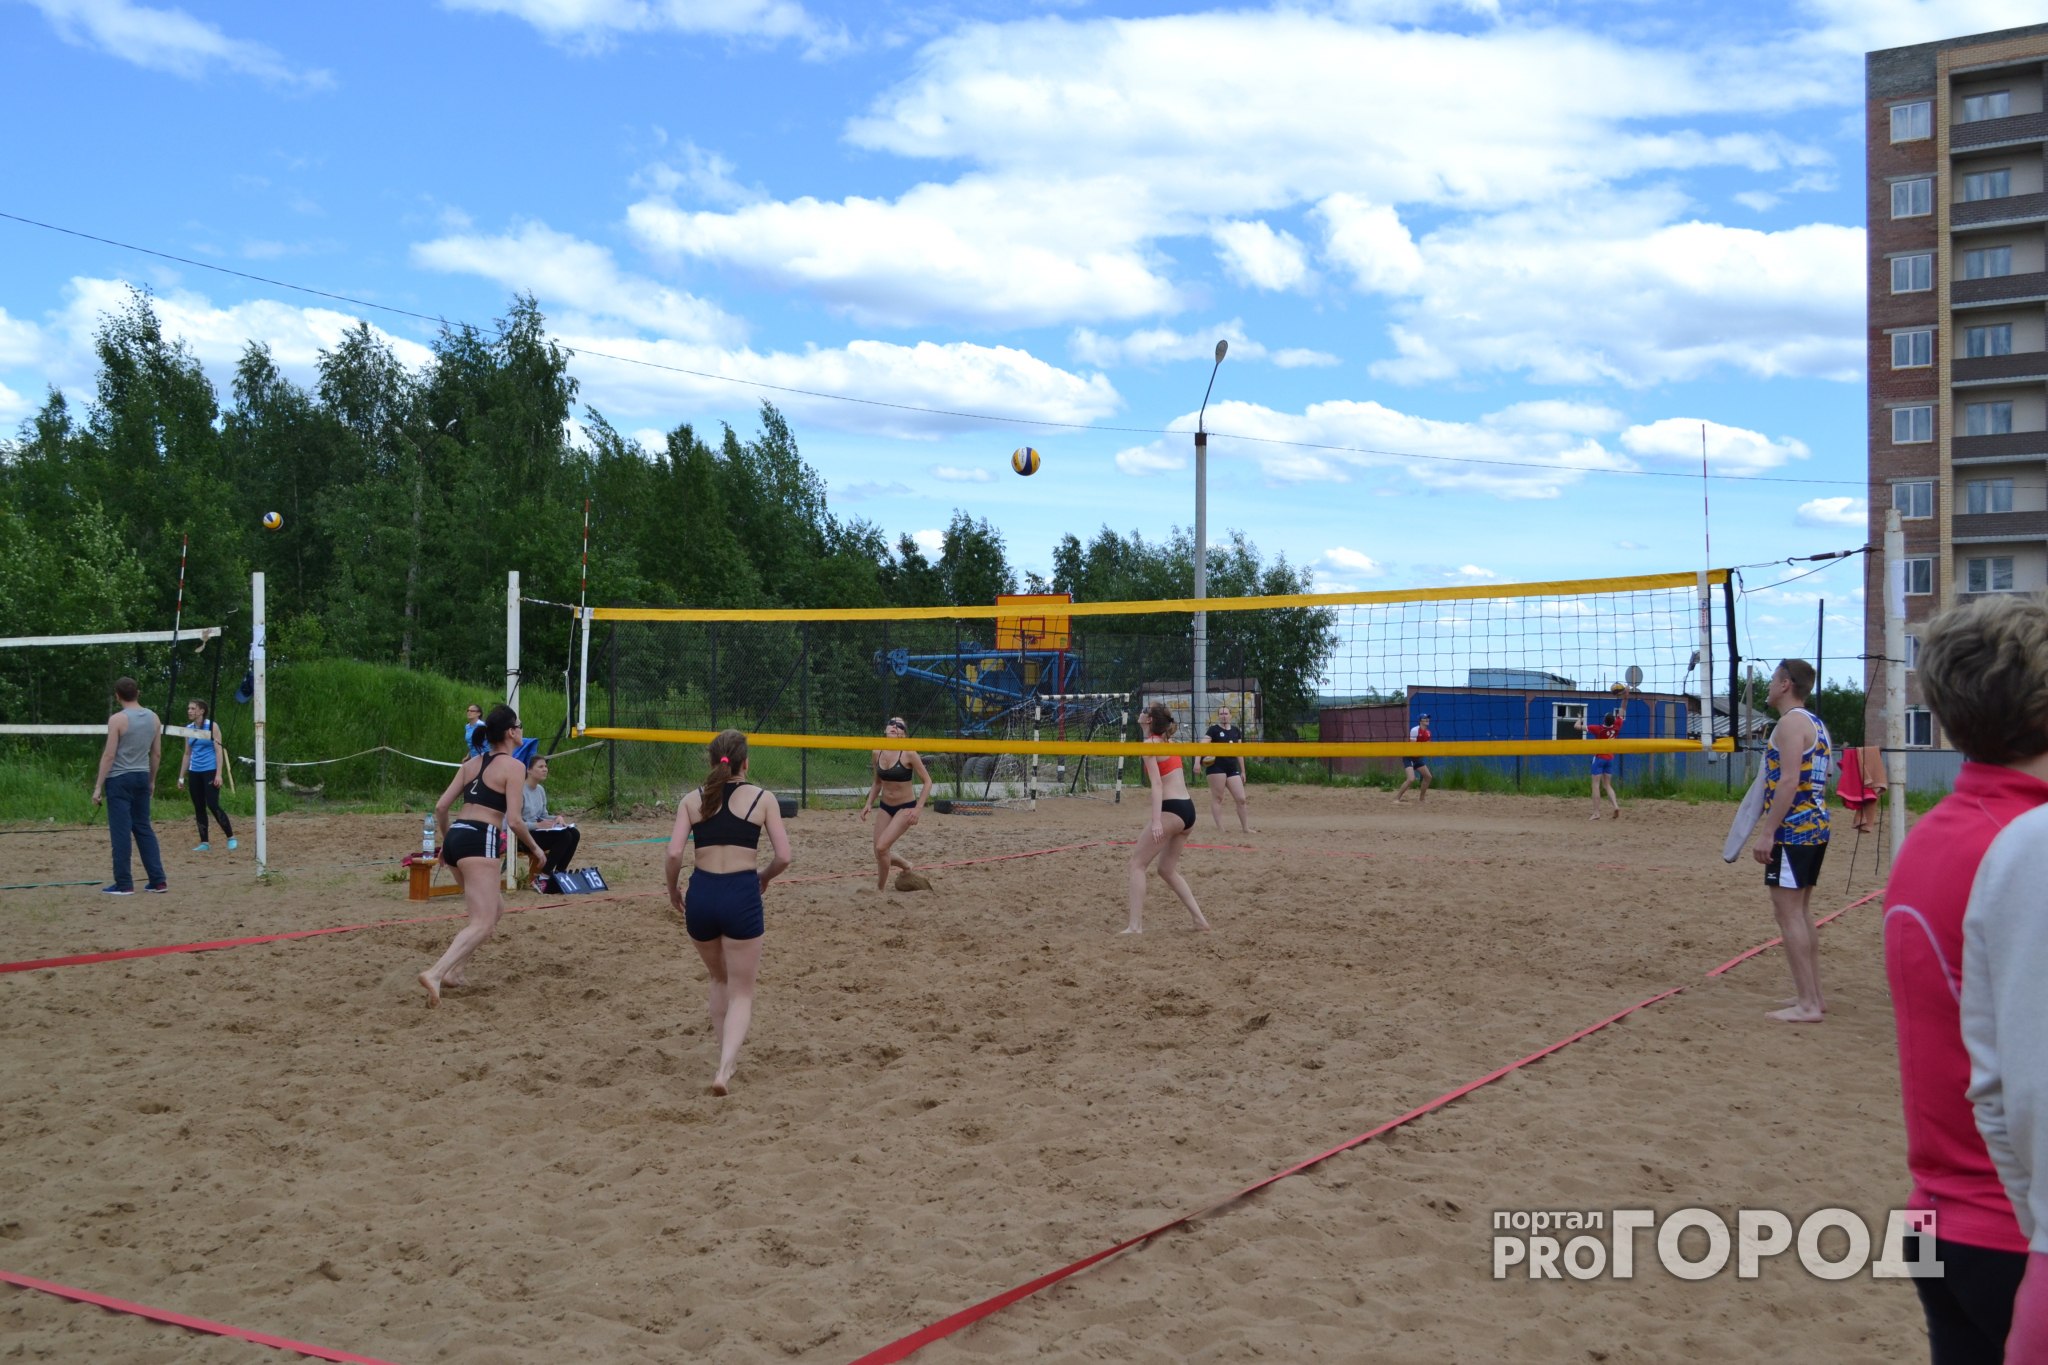 Возбуждение, бикини и песок: в Сыктывкаре прошел чемпионат по пляжному волейболу (фото)